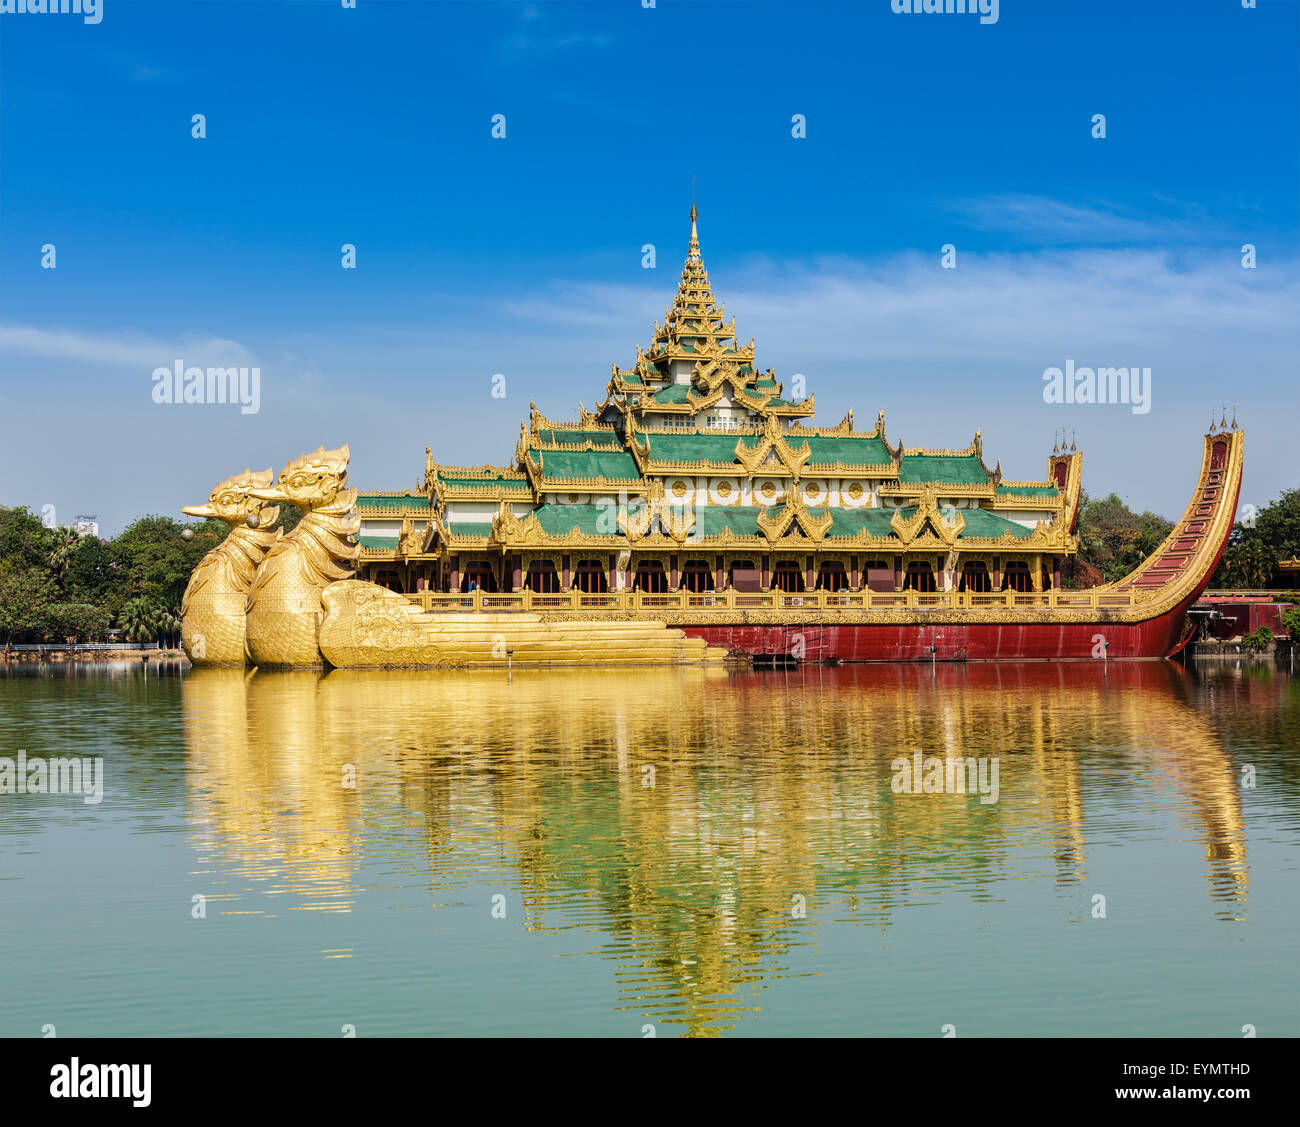 L'icône de Yangon et attraction touristique historique Karaweik - réplique d'une barge royale au Lac Kandawgyi, Yangon, Myanmar Birmanie Banque D'Images